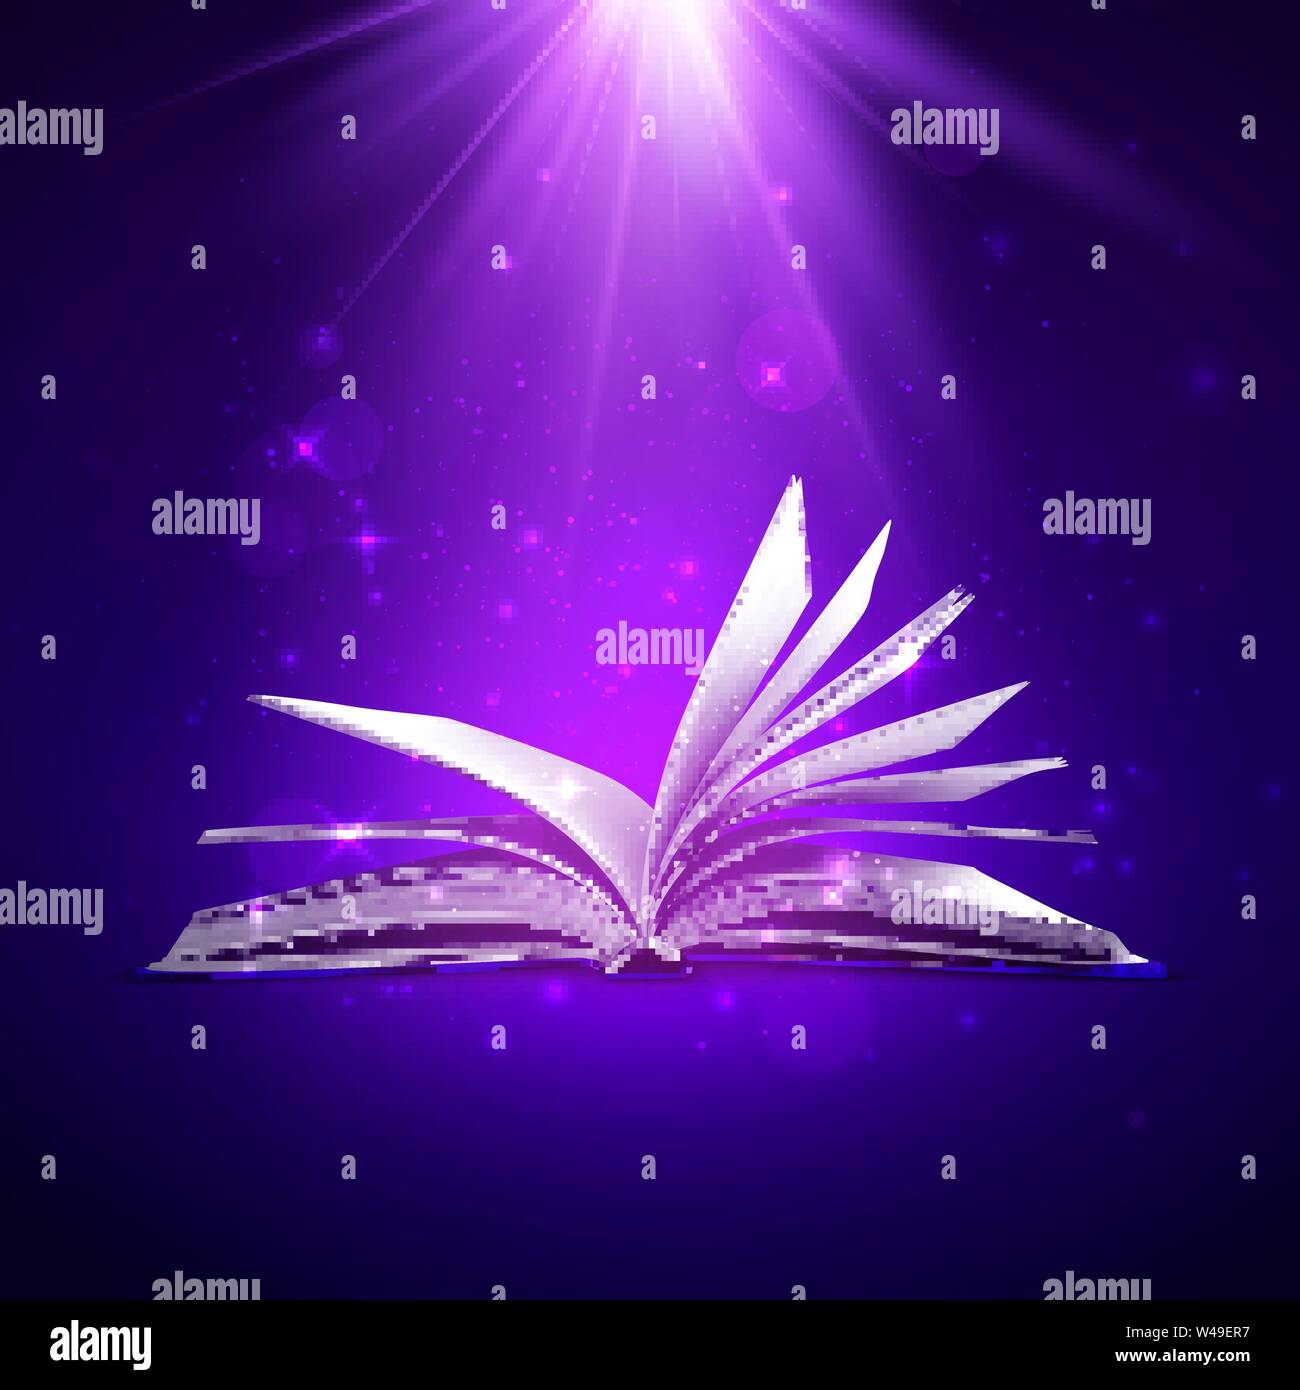 Geheimnis Buch öffnen. Fantasy Buch mit magischen Licht und funkelt. Vector Illustration in violetten Farbtönen Stock Vektor